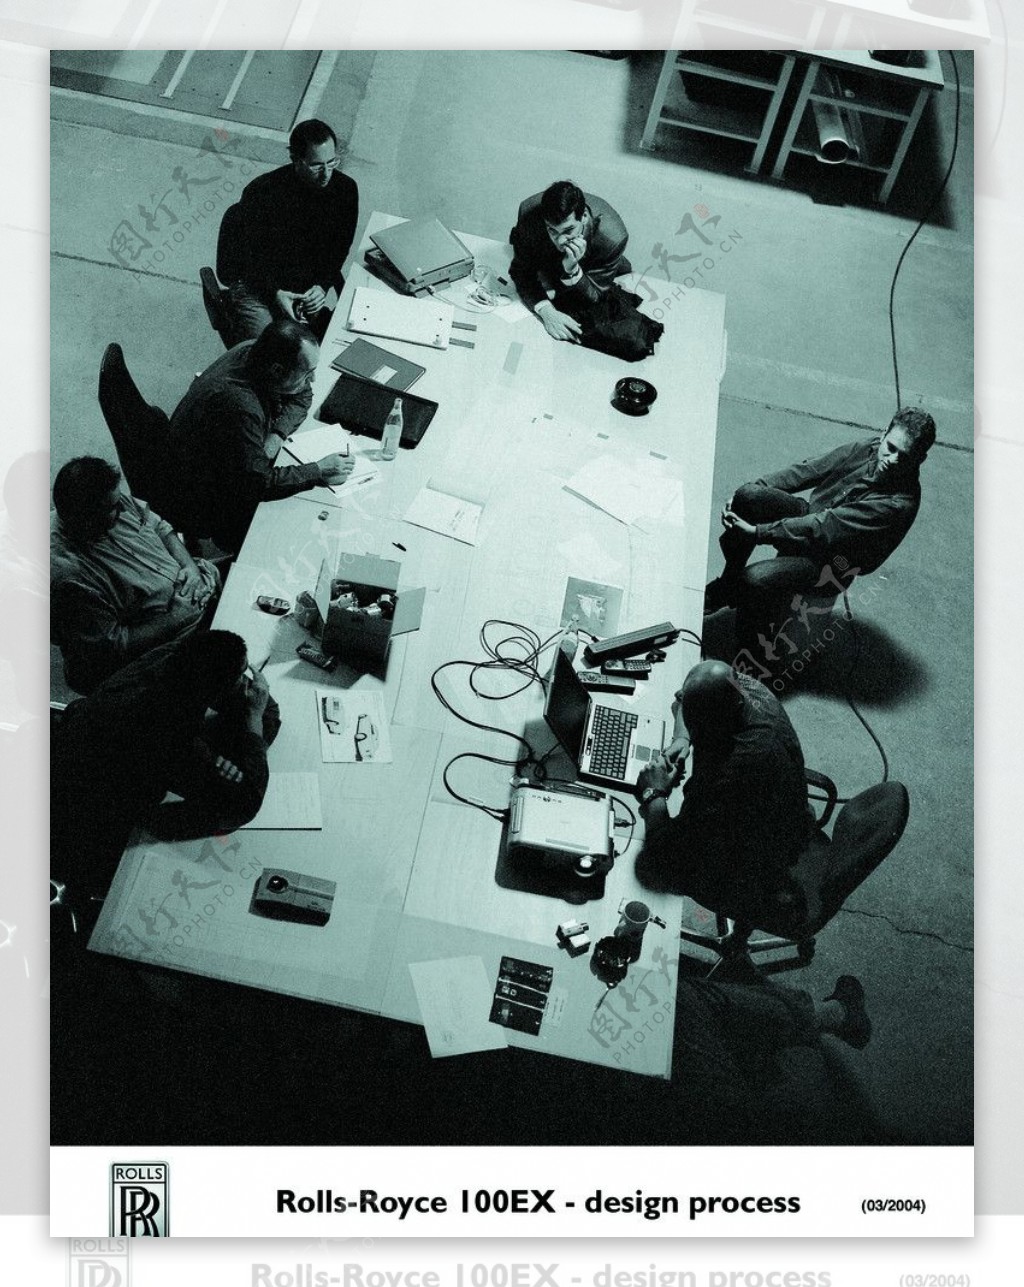 劳斯莱斯设计室百年纪念版100EX设计过程图片